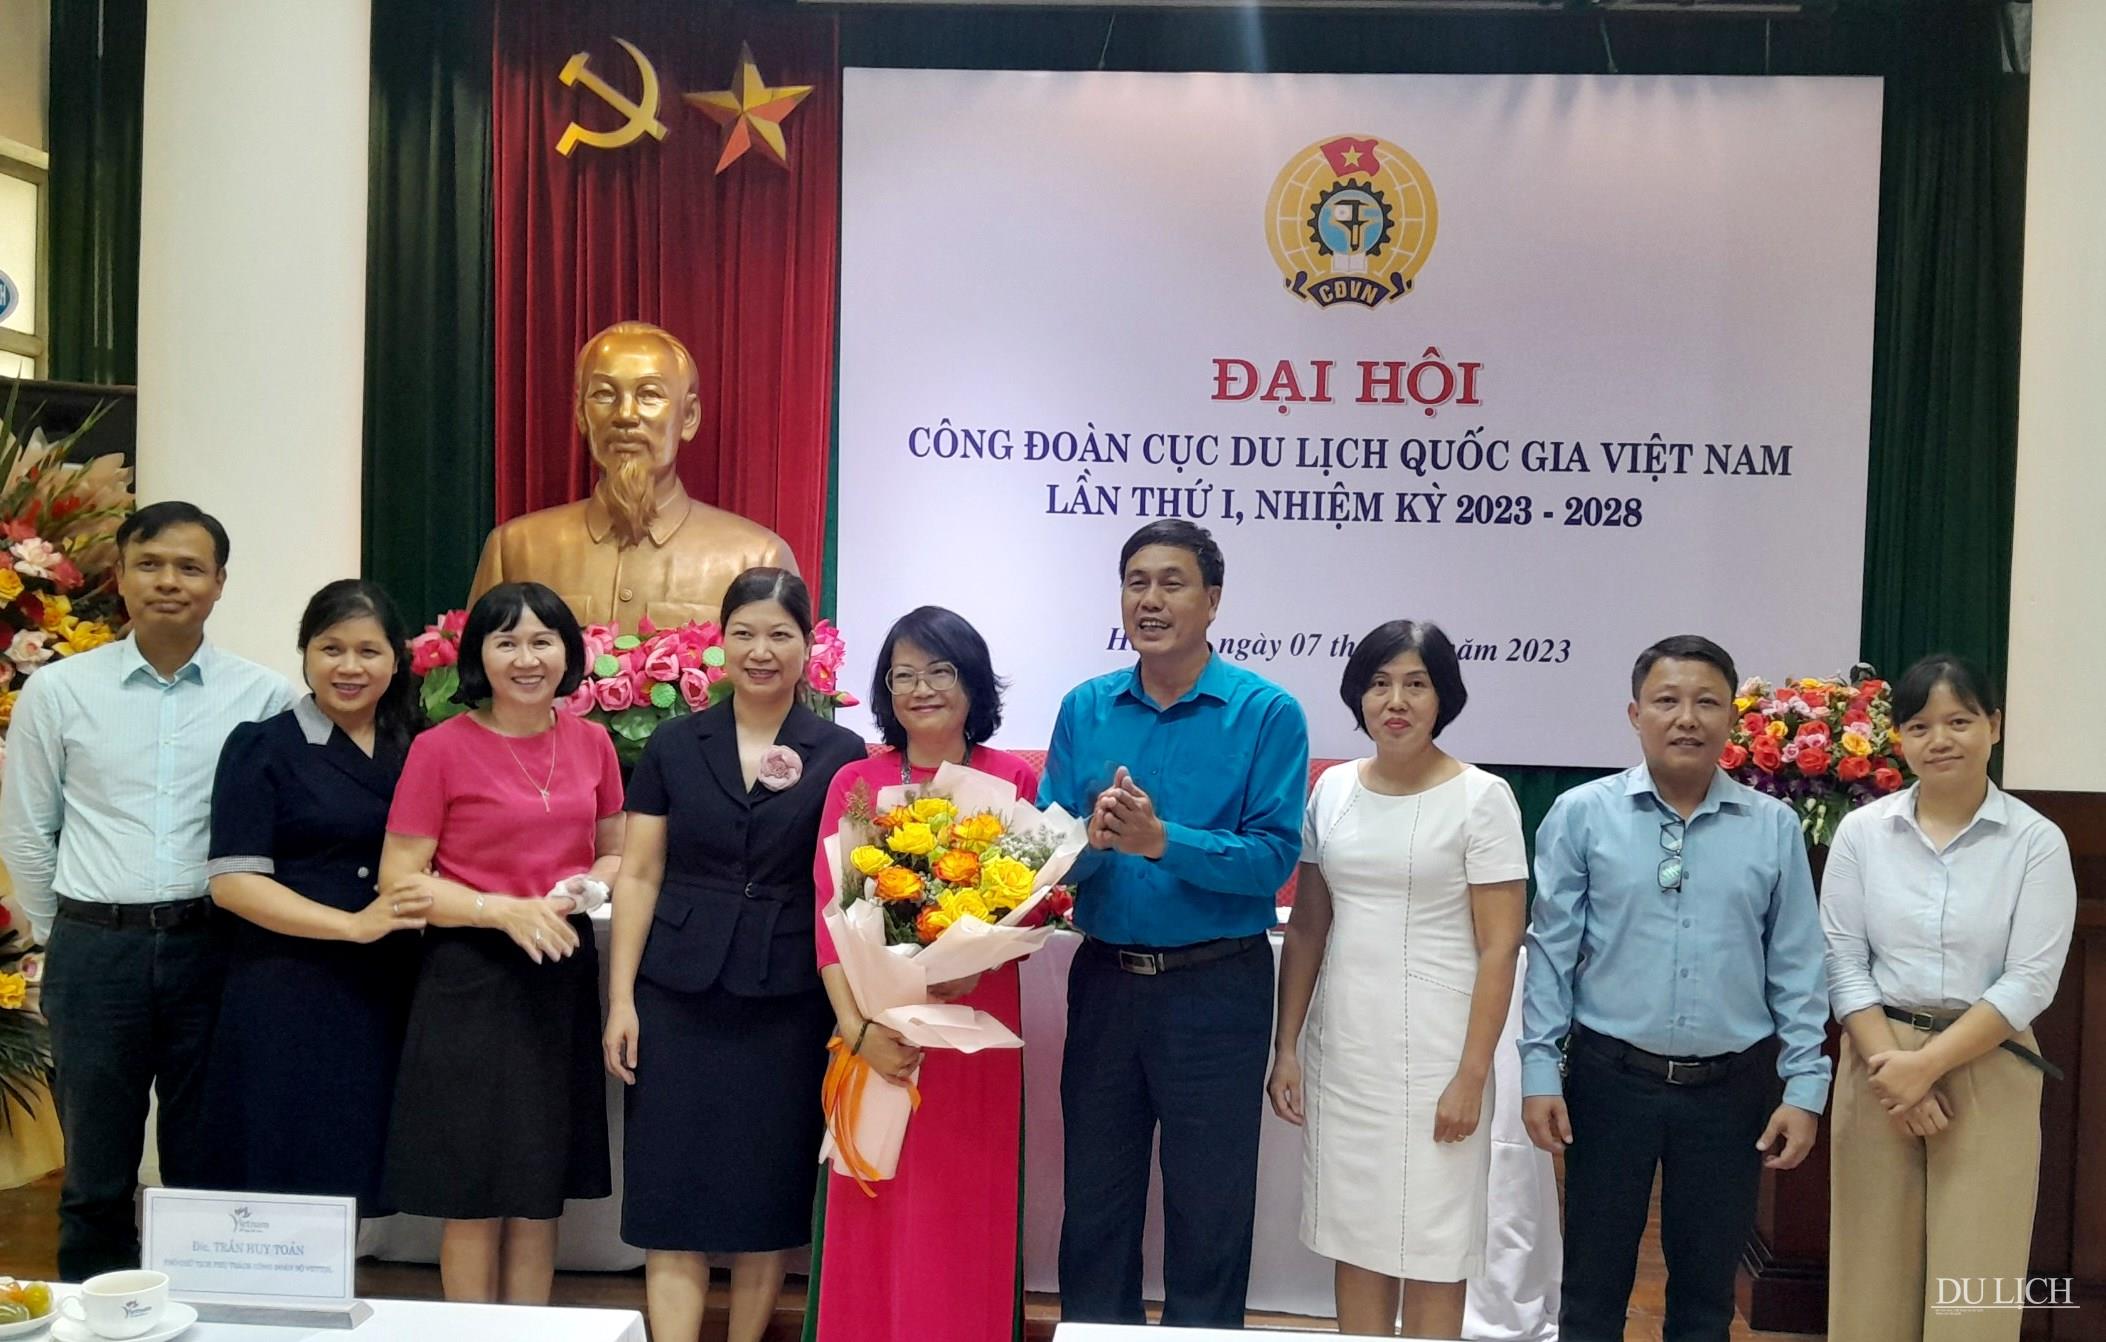 Ra mắt Ban Chấp hành Công đoàn Cục Du lịch Quốc gia Việt Nam nhiệm kỳ 2023-2028